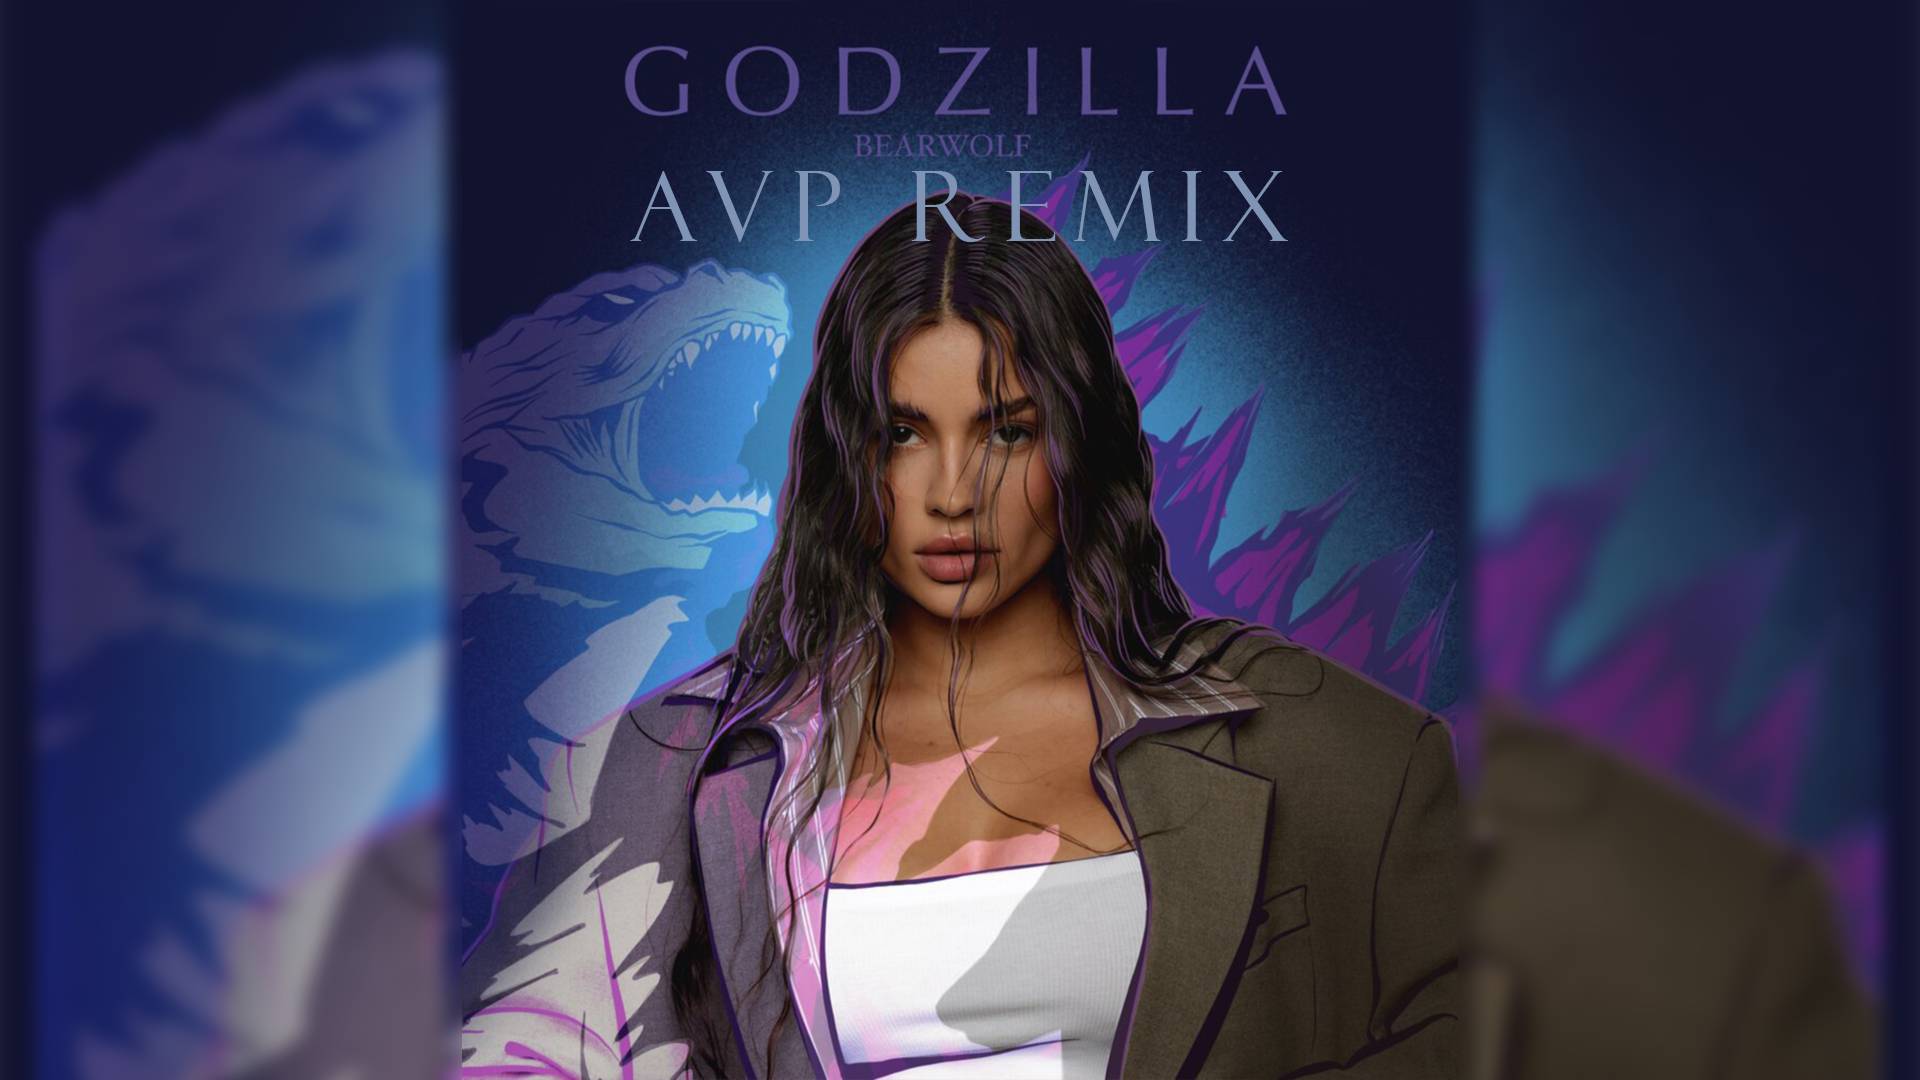 GODZILLA - bearwolf (AVP Remix)